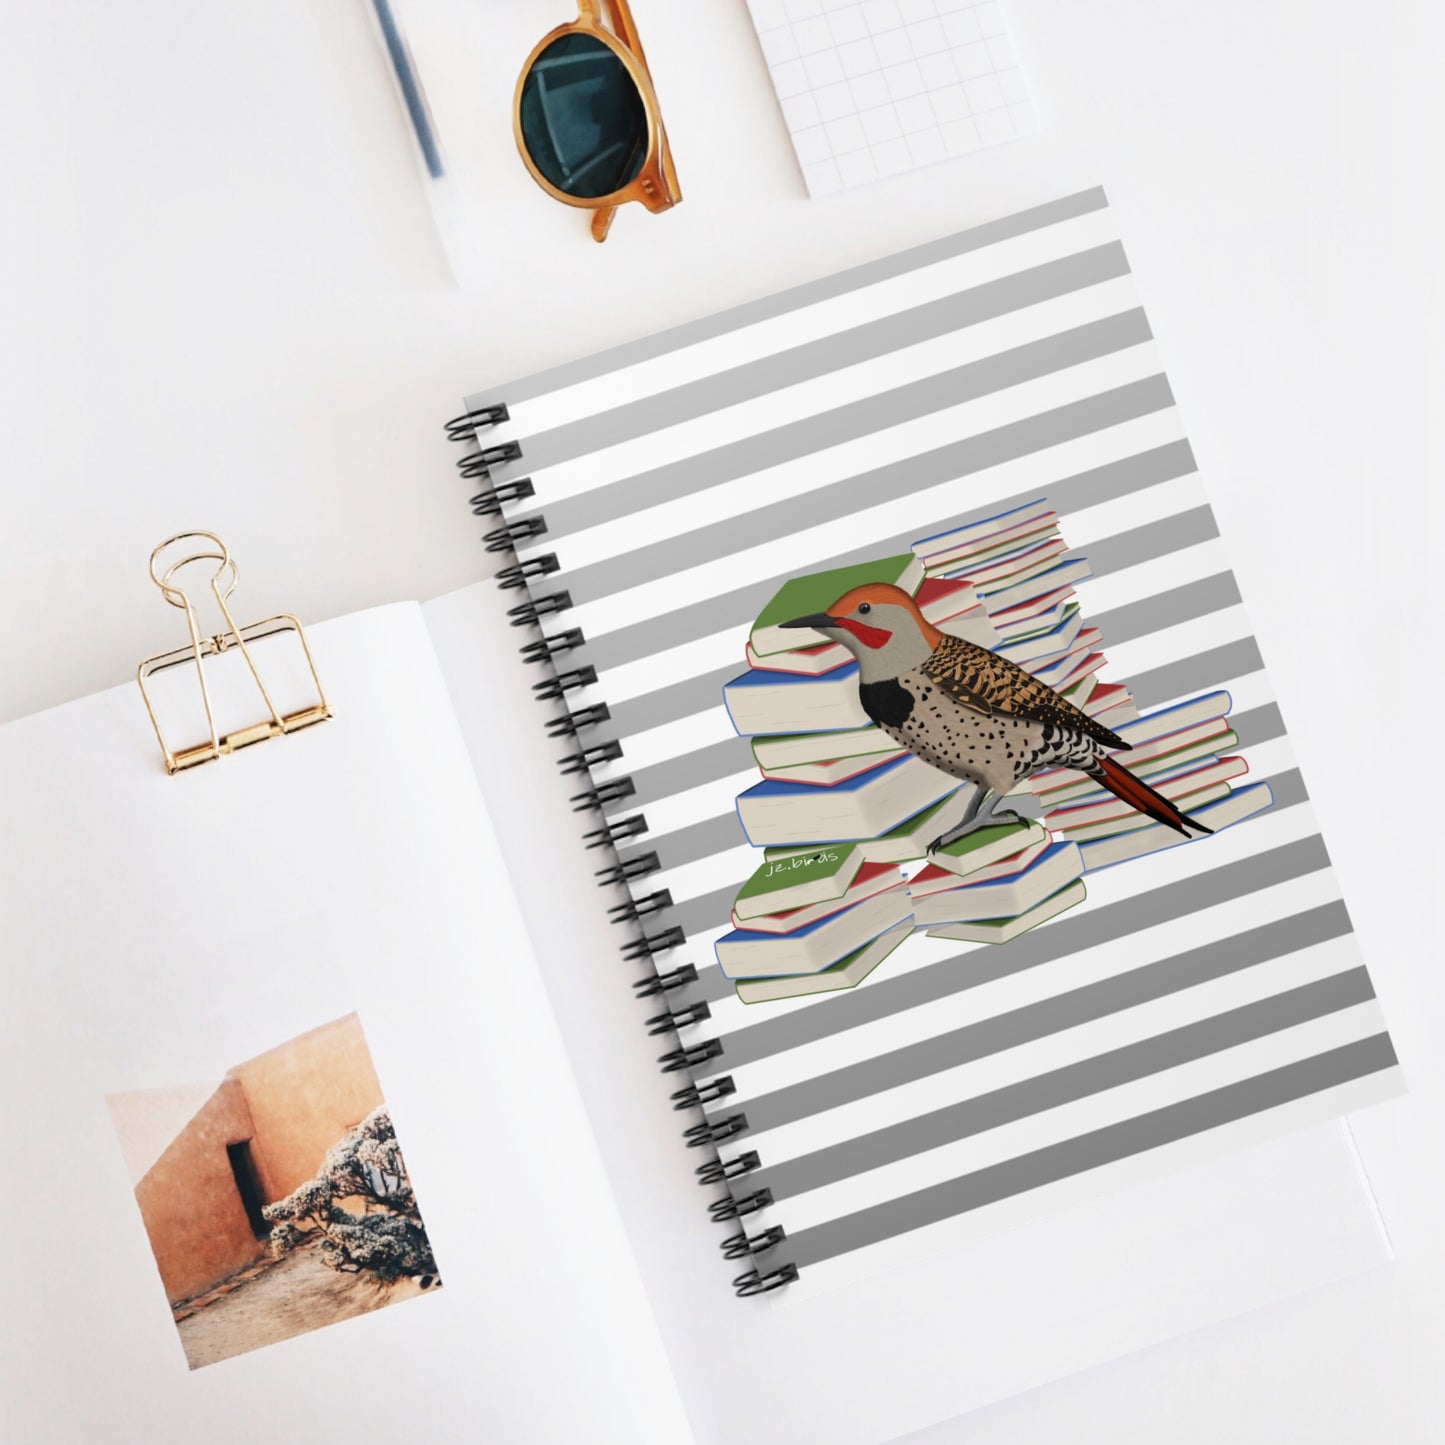 Northern Flicker Bird with Books Birdlover Bookworm Spiral Notebook Ruled Line 6" x 8"